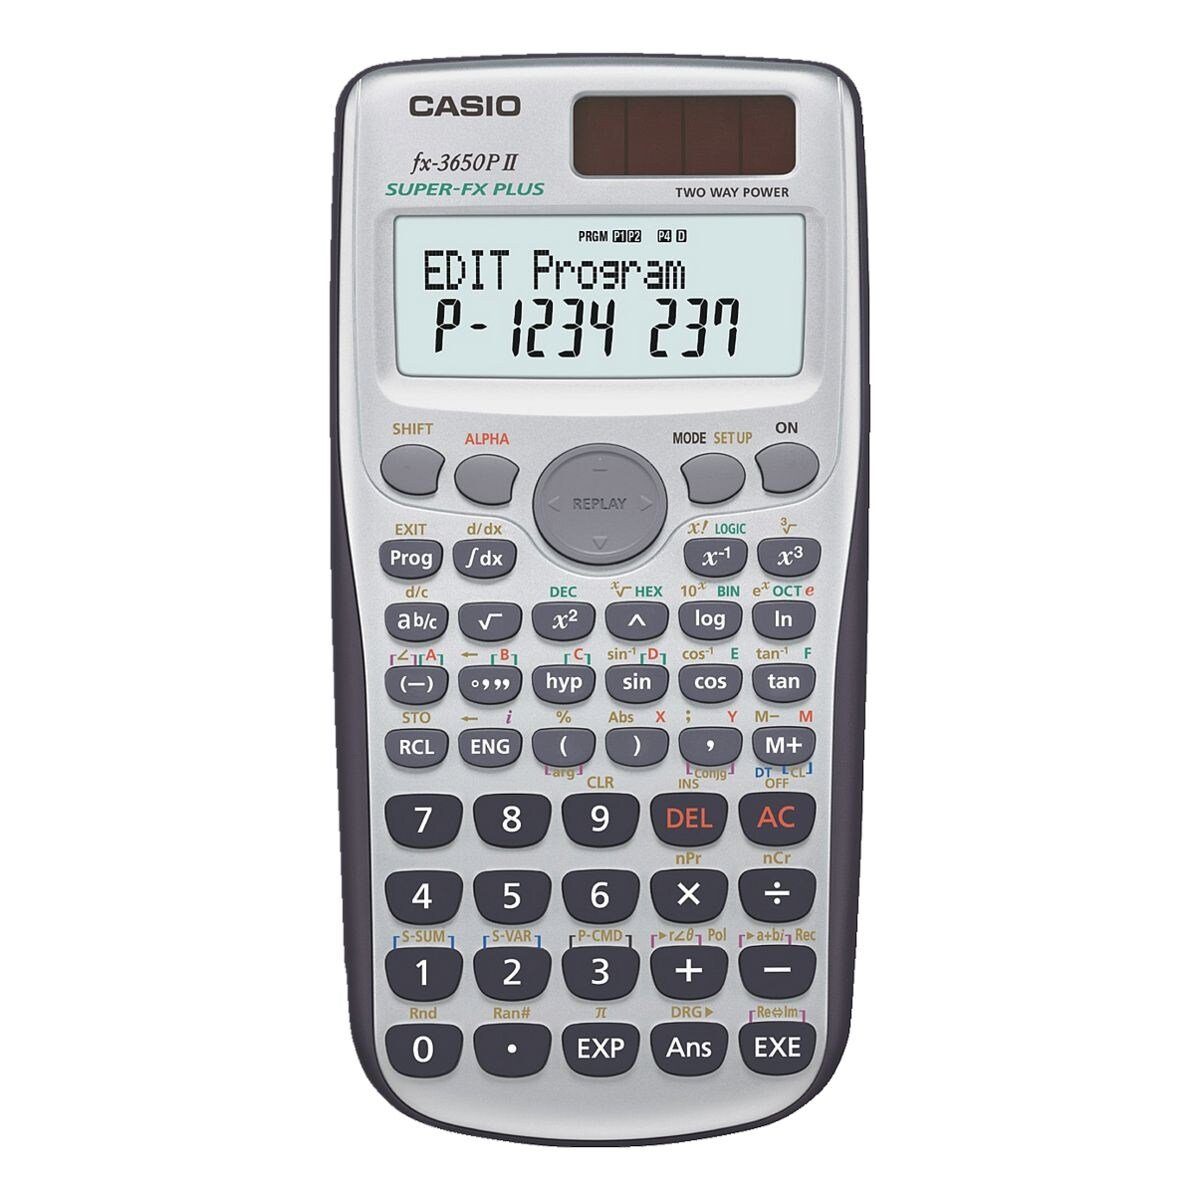 CASIO Taschenrechner FX-3650PII, Display mit 2 Zeilen à 16 Zeichen + 1  Zeile à 10 Zeichen